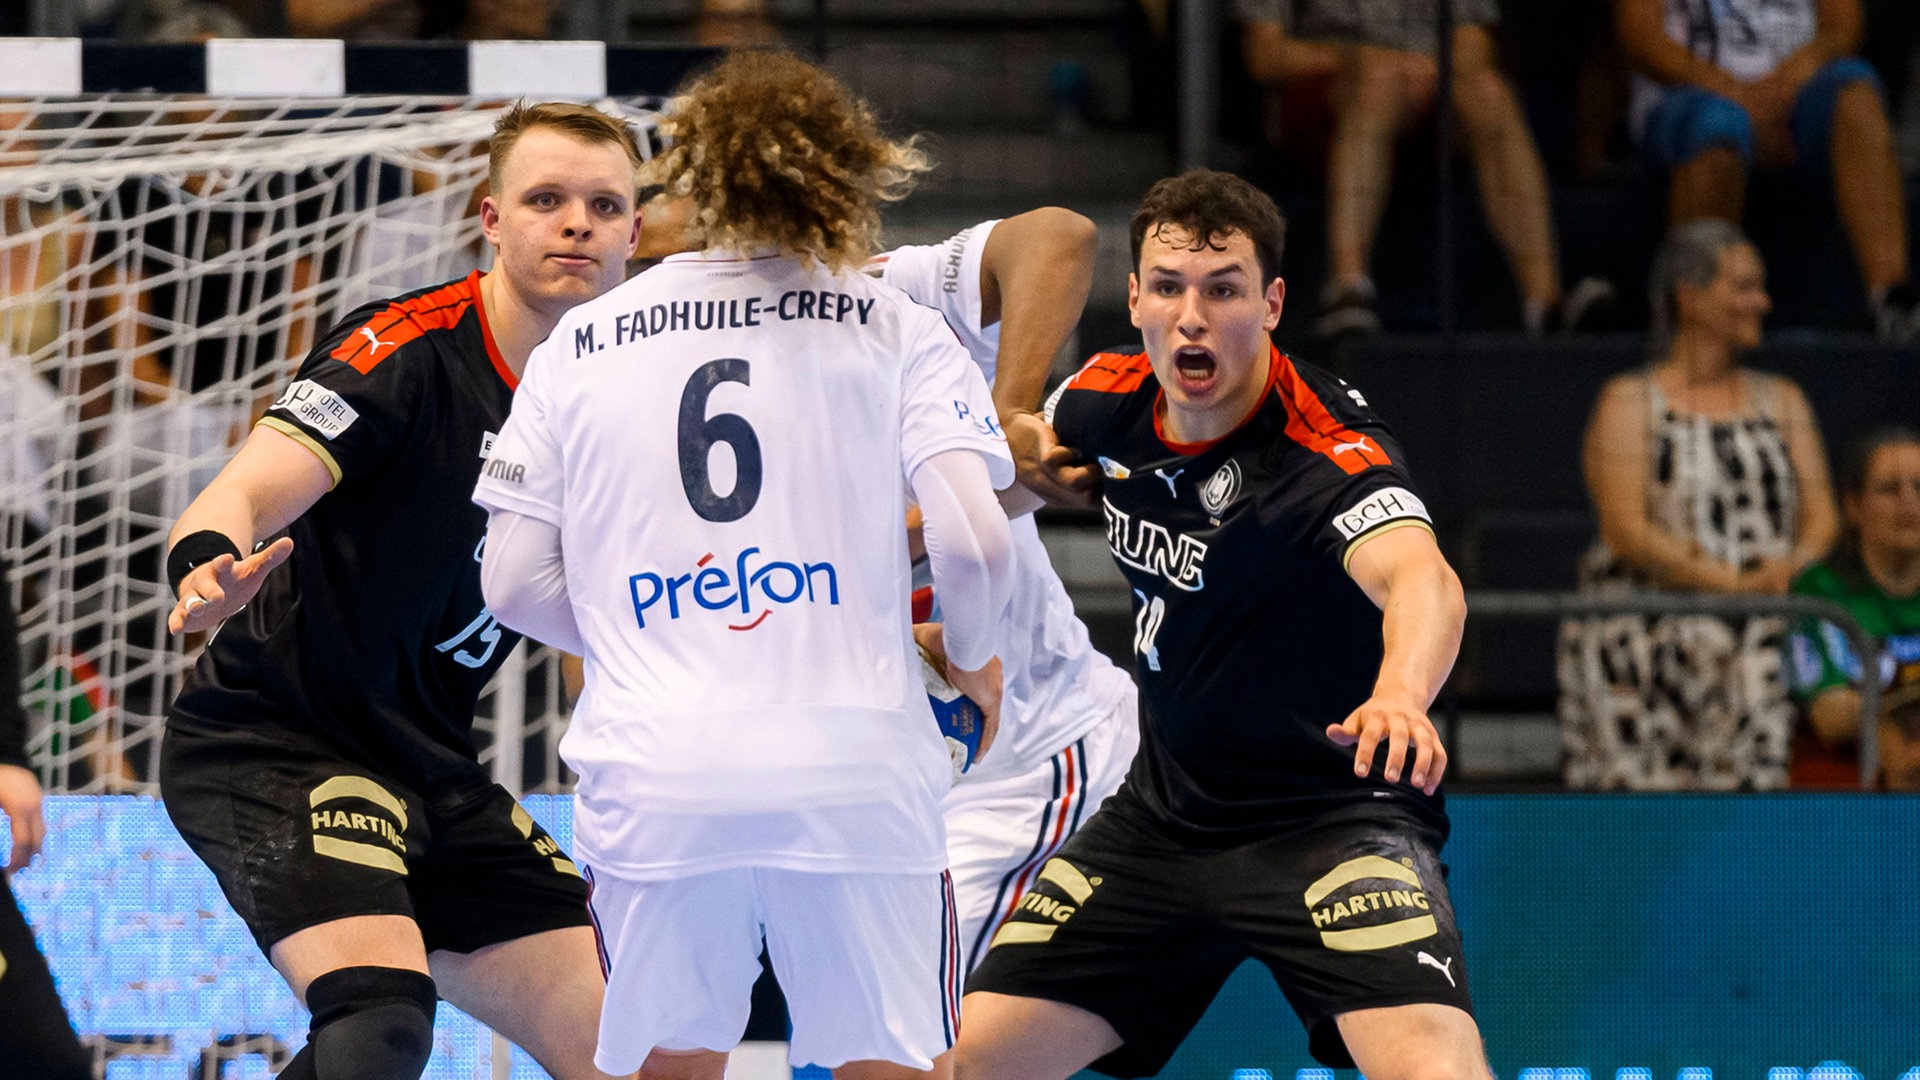 U21-Handball-WM DHB-Team mit norddeutschem Mittelblock zur Siegesserie NDR.de - Sport